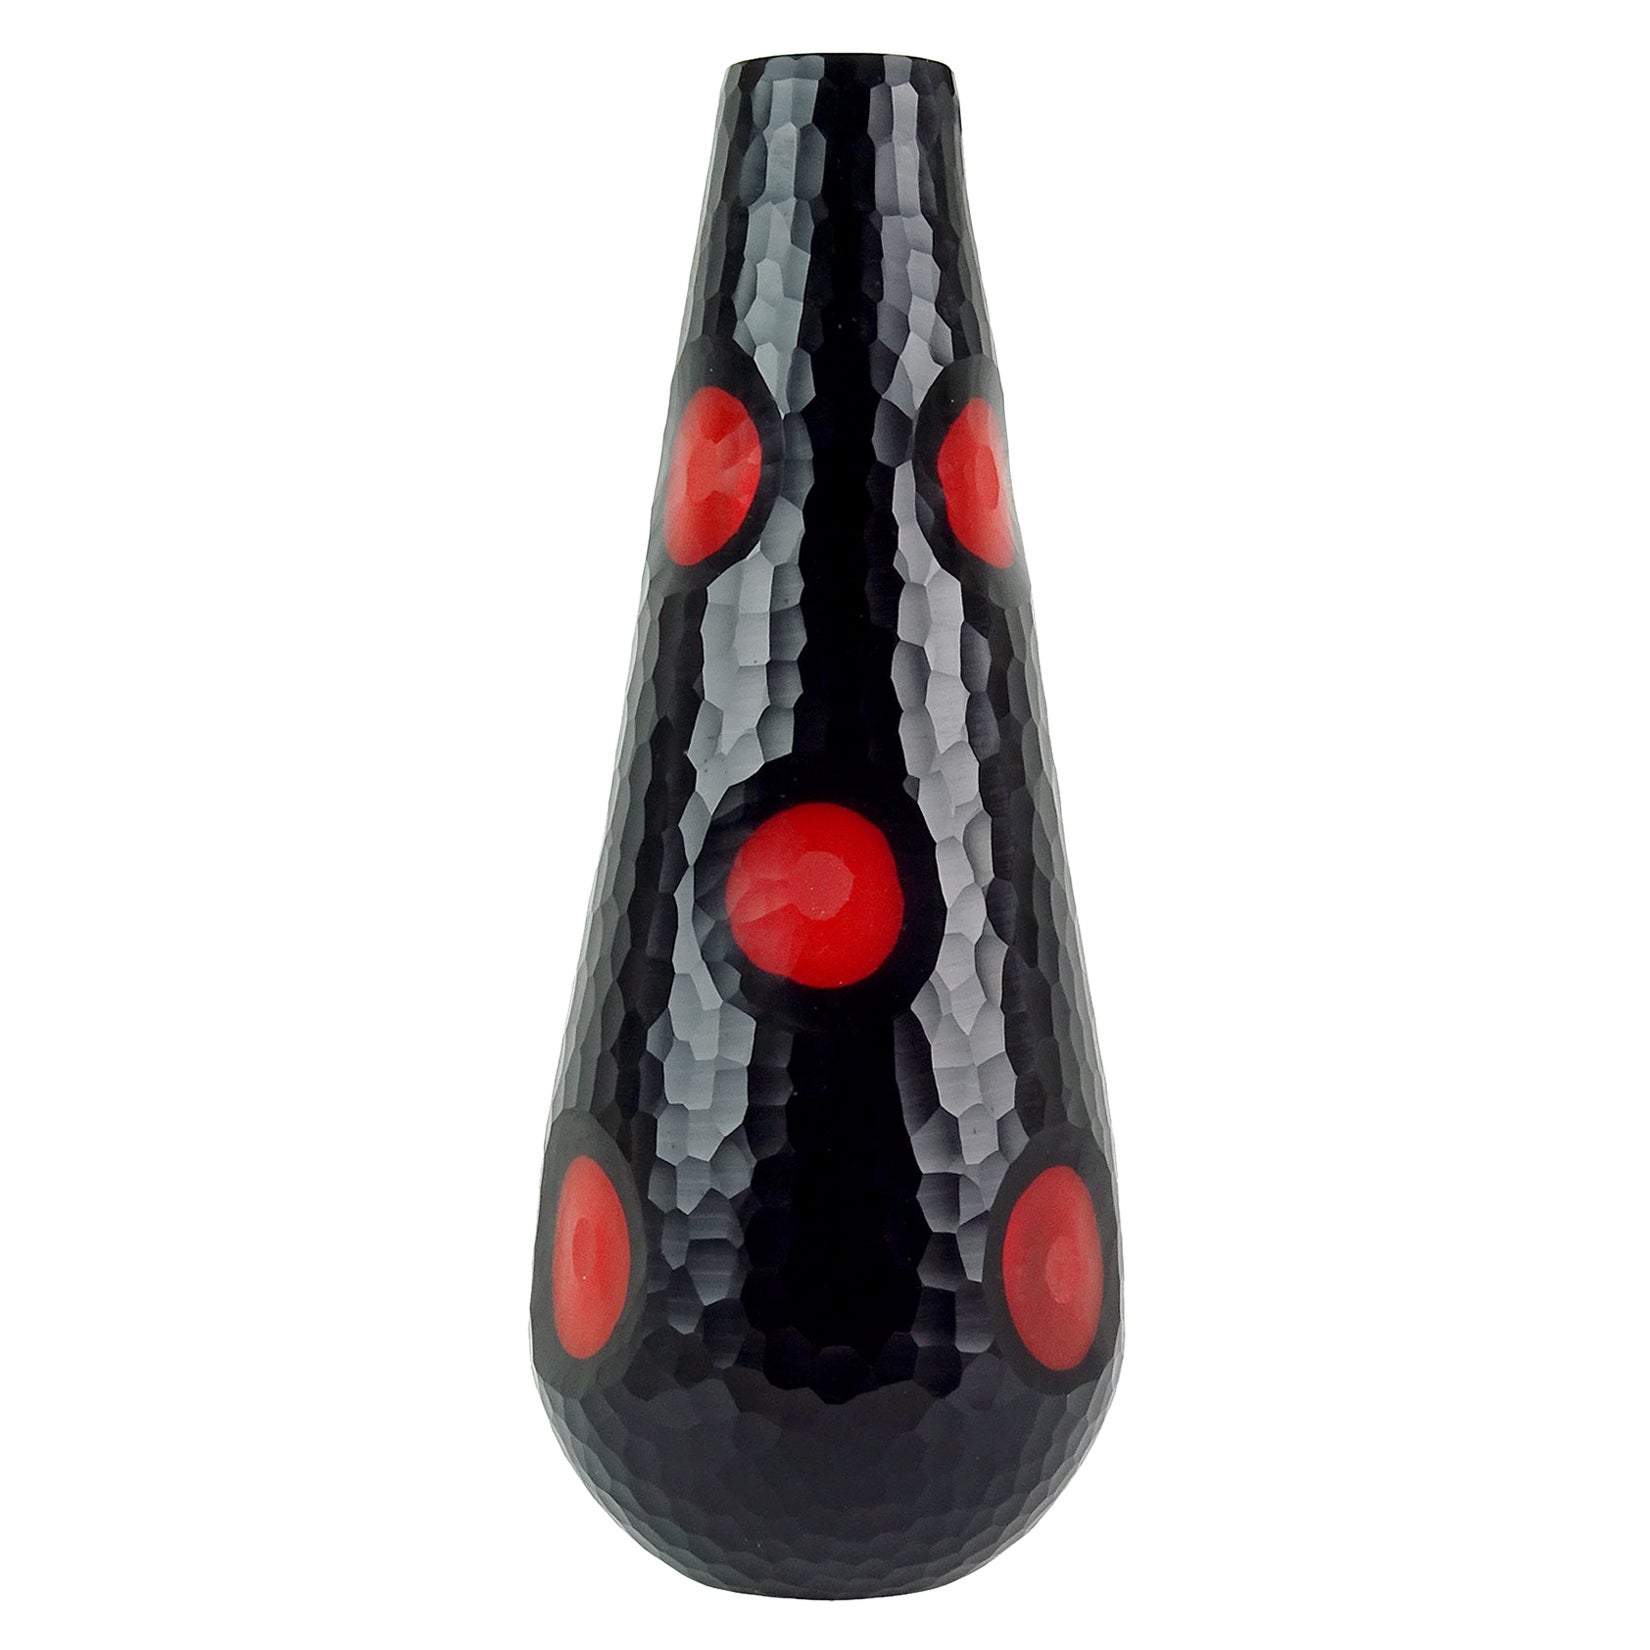 Murano Modern Carved Black over Red Italian Art Glass Sculptural Flower Vase